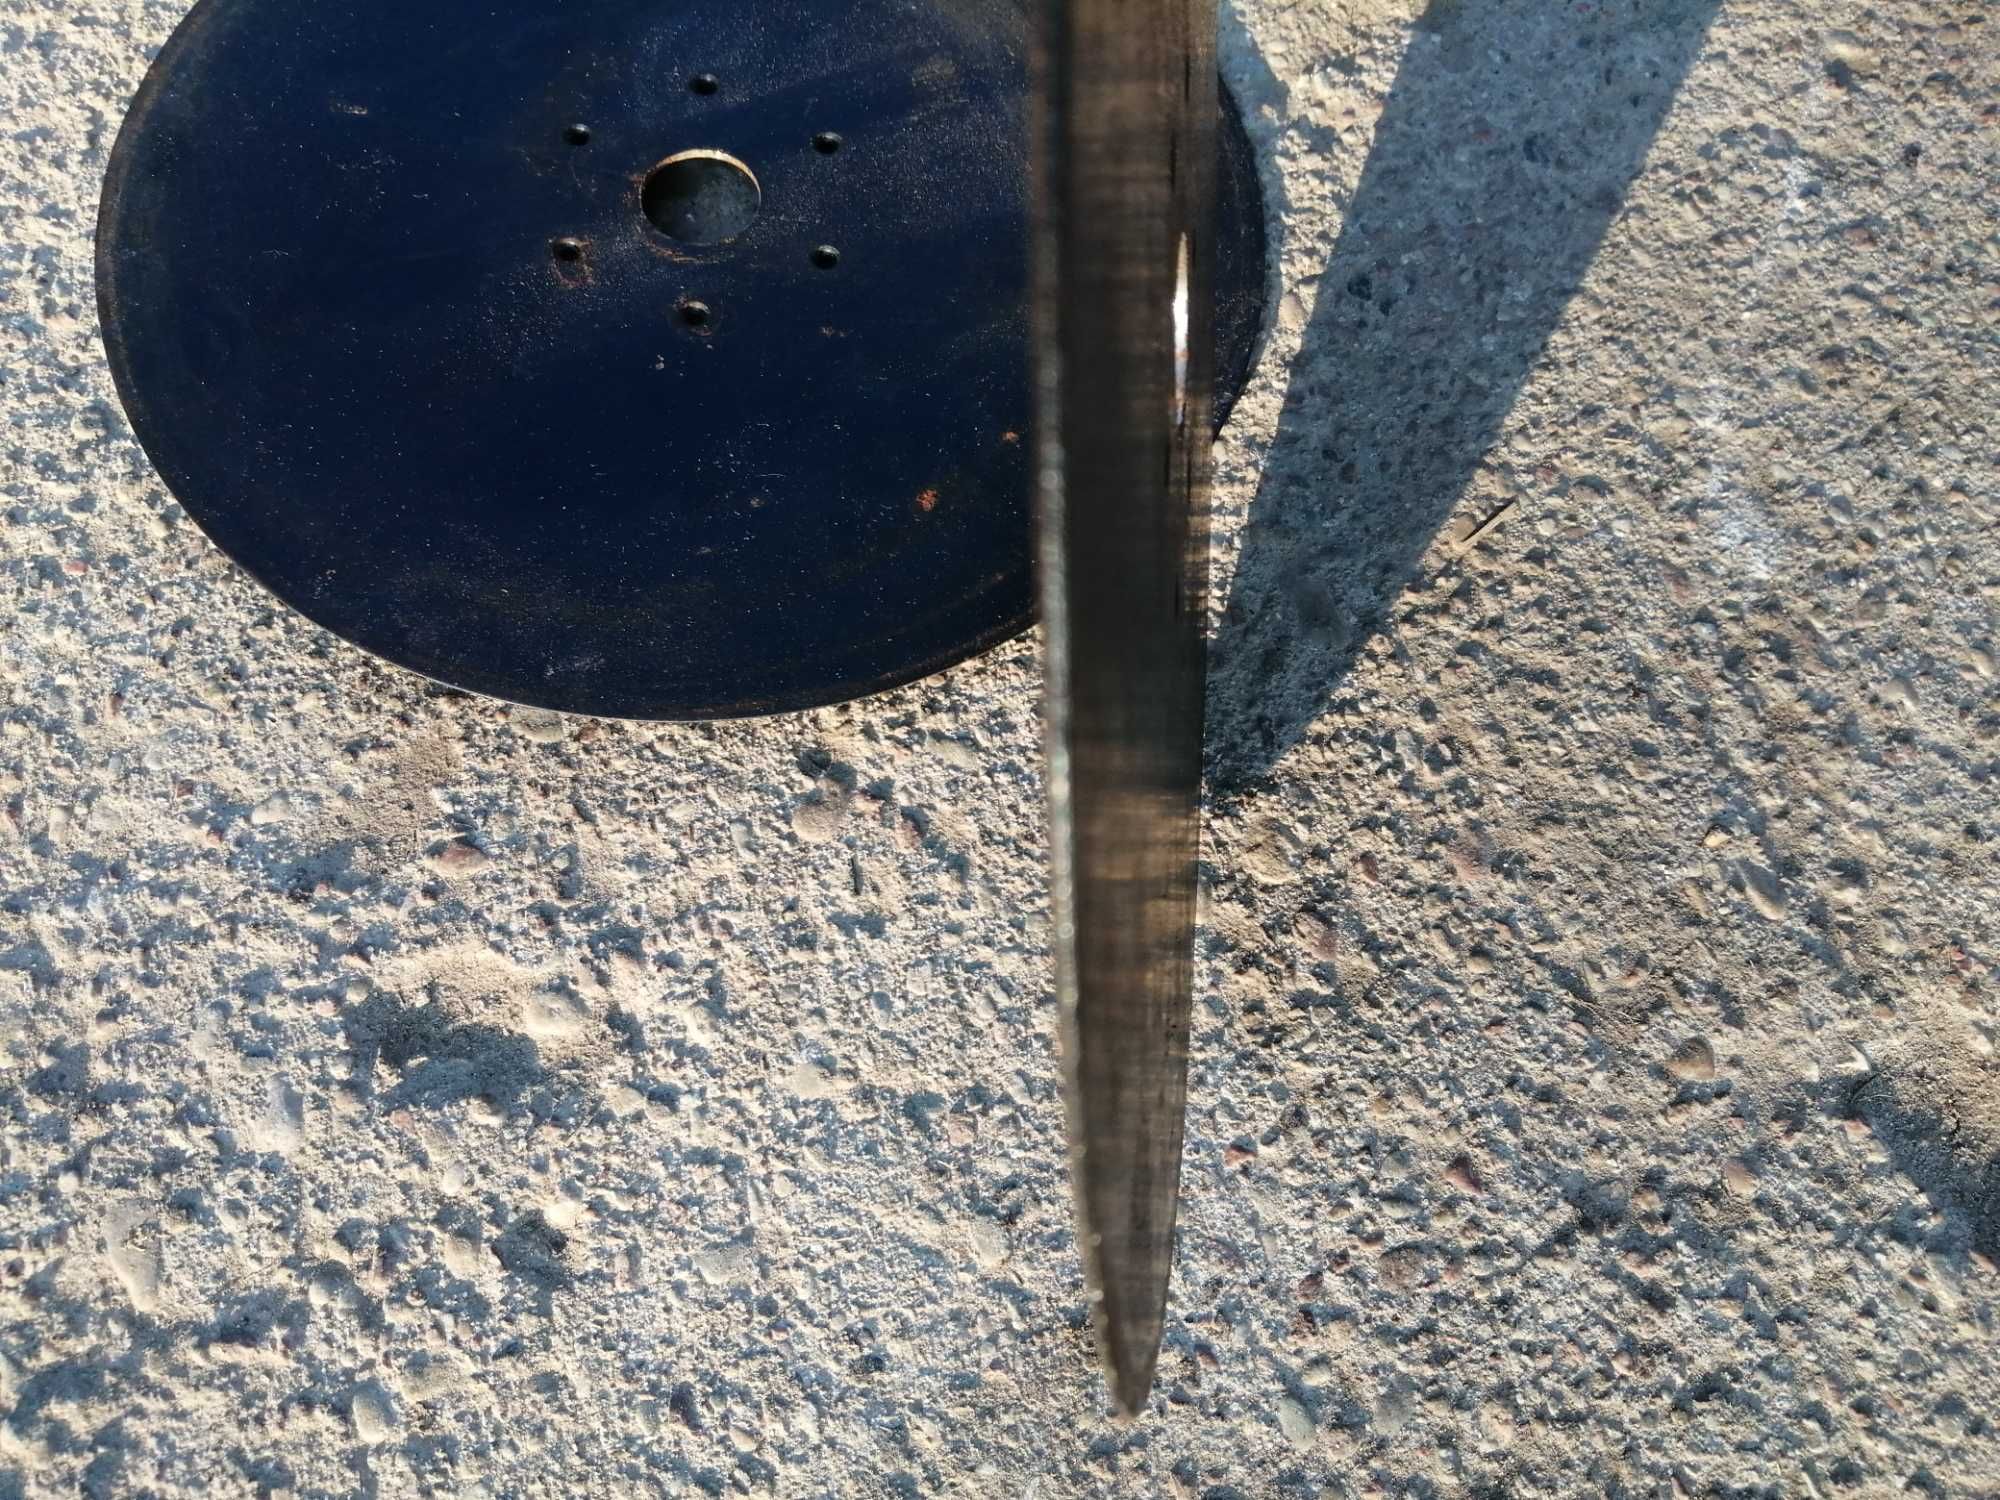 Talerz redlicy wysiewający siewnik 300 mm